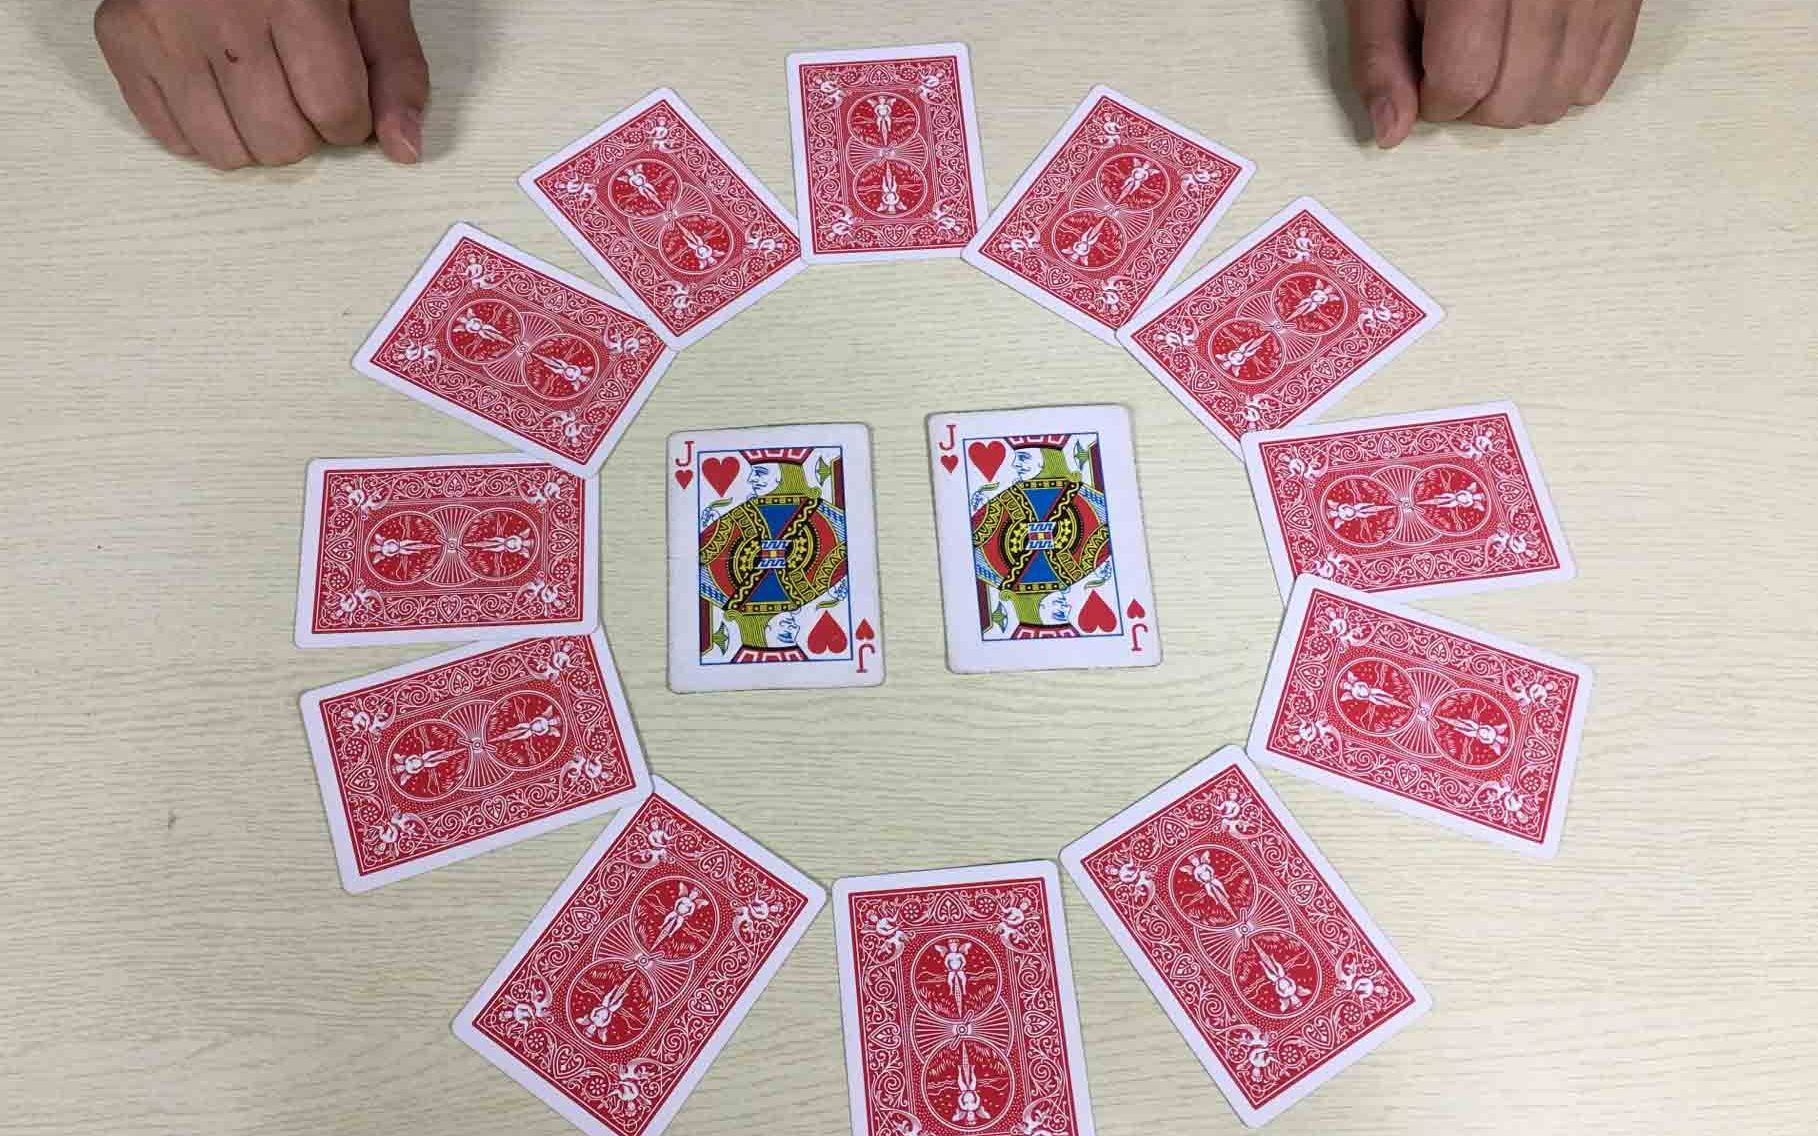 52张牌抽一张猜中魔术图片